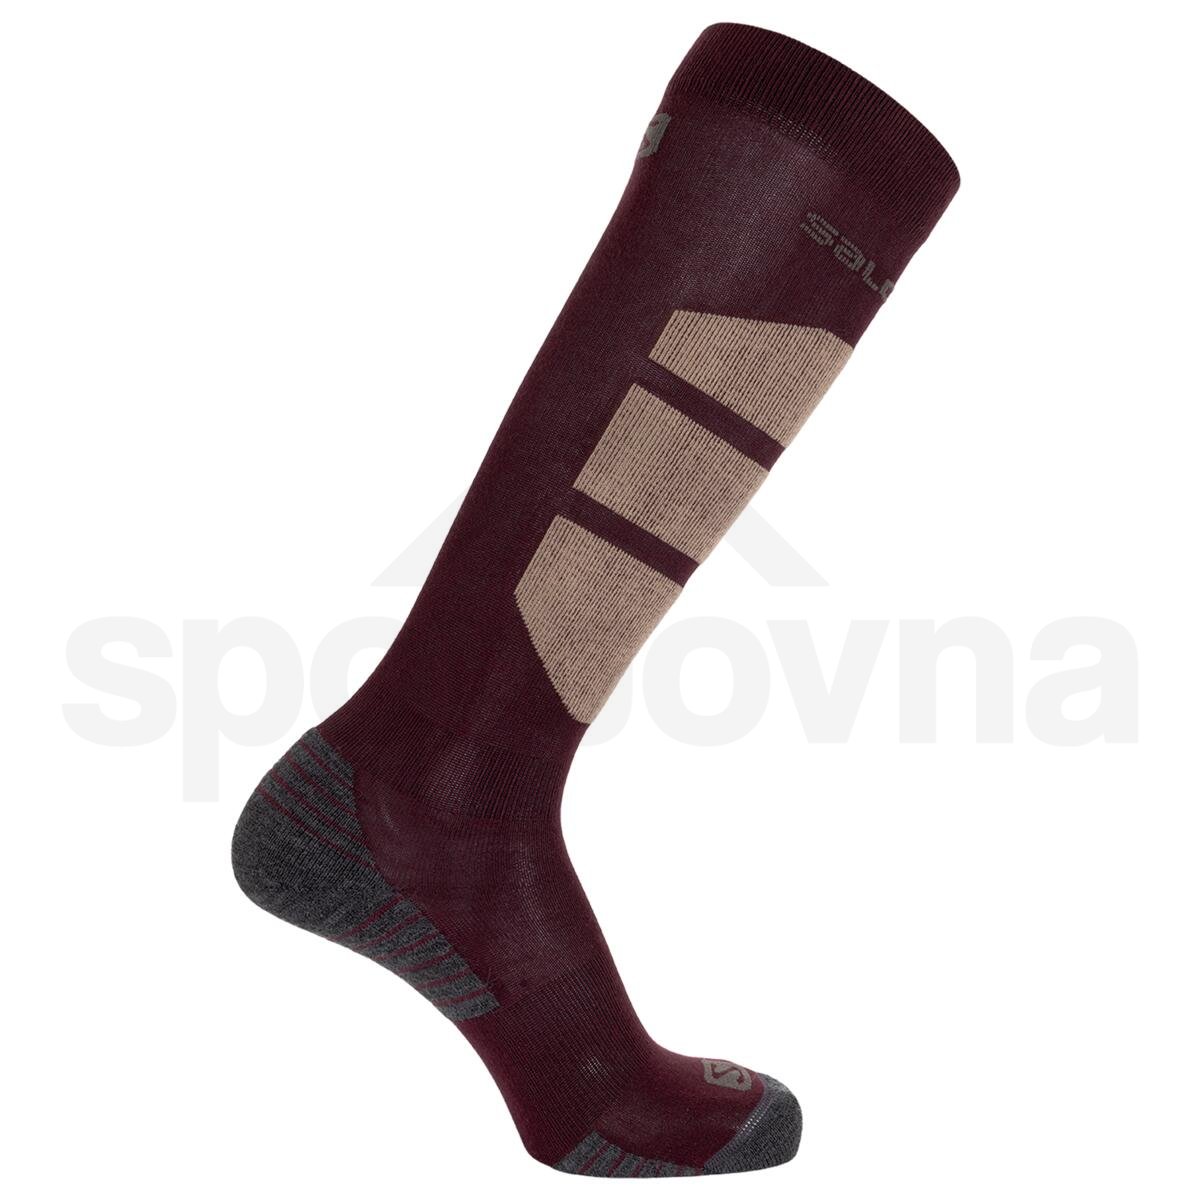 Ponožky Salomon Comfort - červená/hnědá